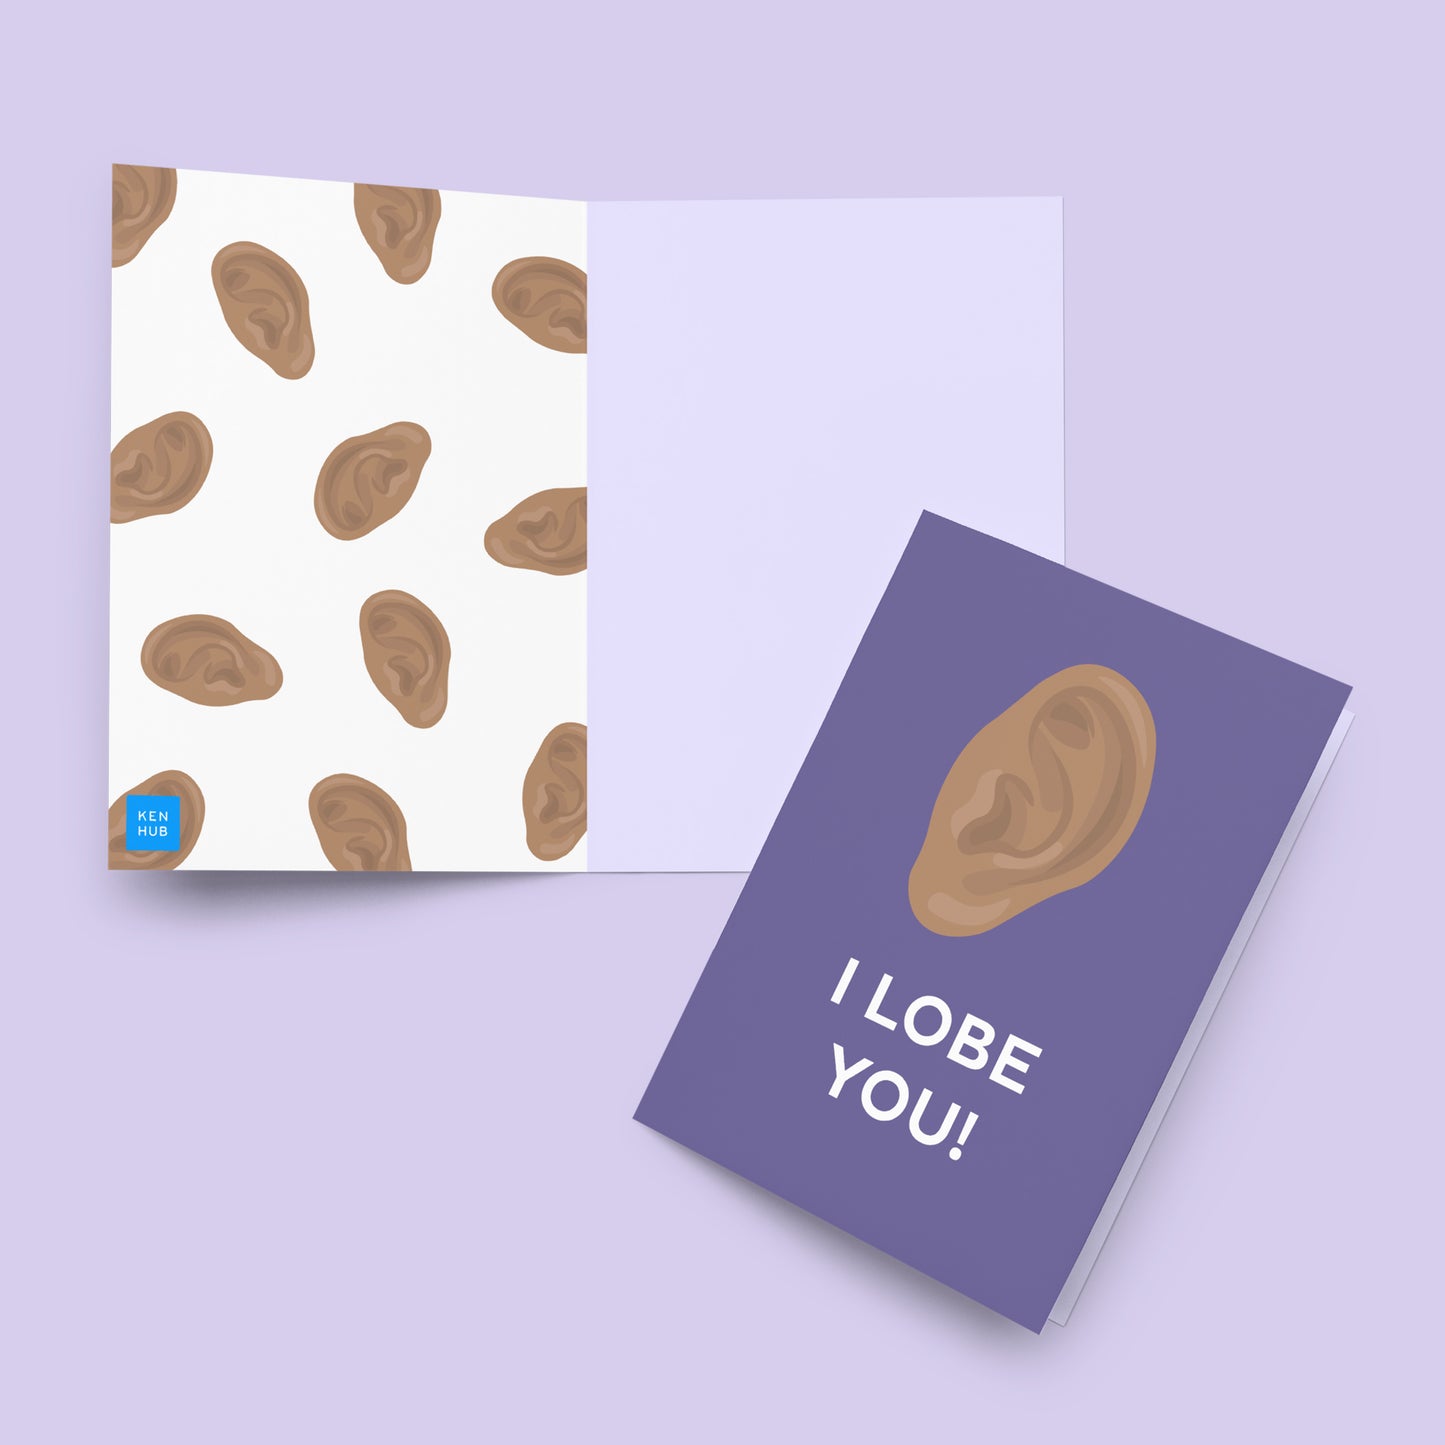 I lobe you - Greeting card